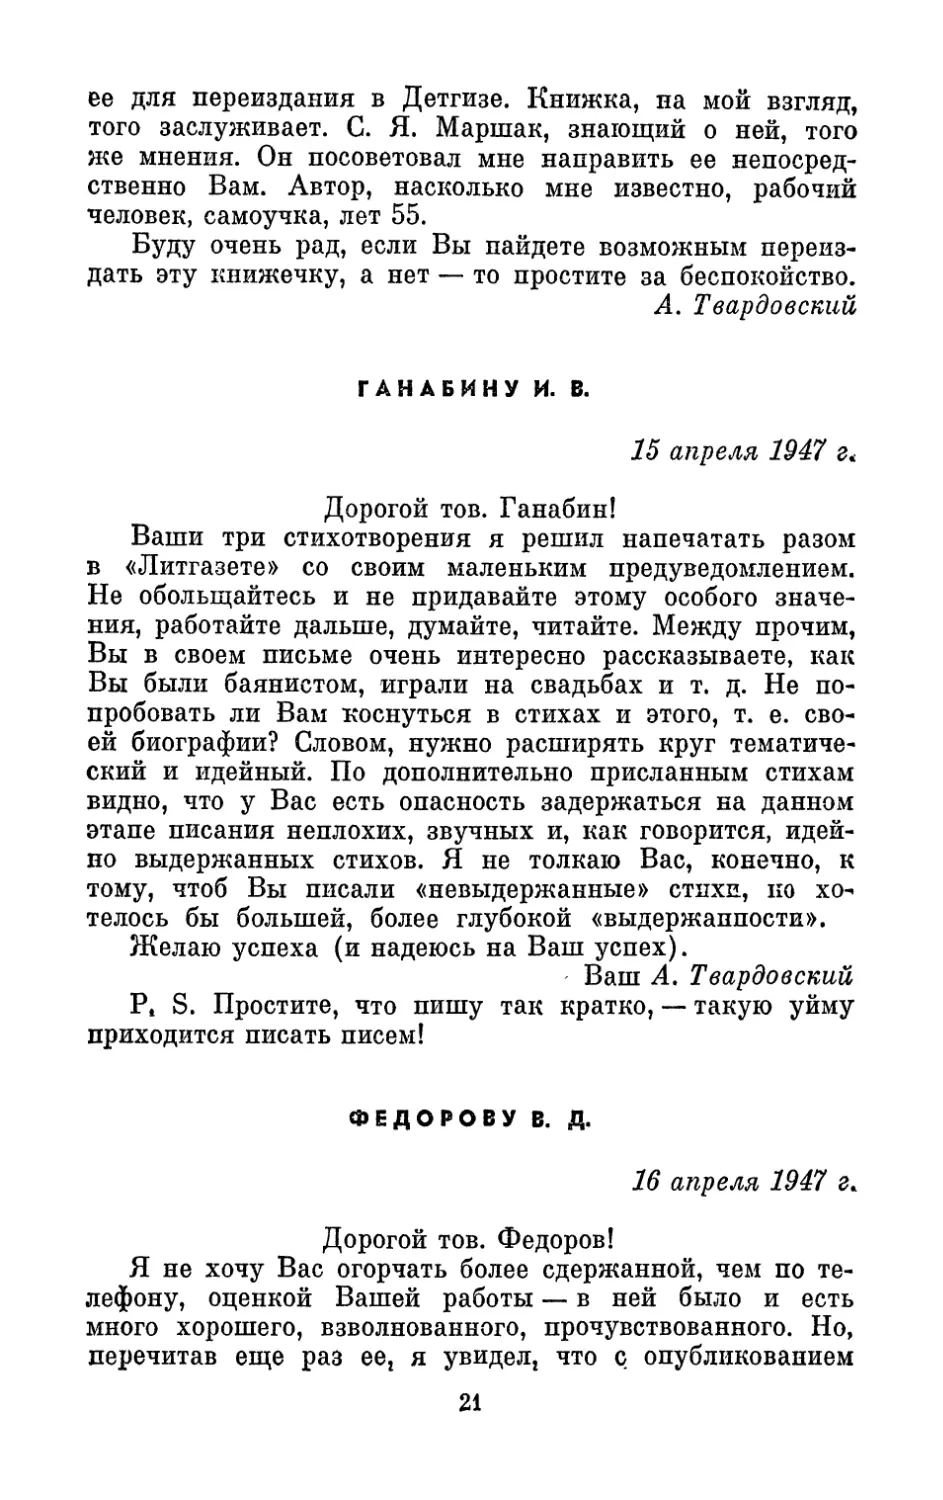 Ганабину И. В., 15 апреля 1947 г.
Федорову В. Д., 16 апреля 1947 г.